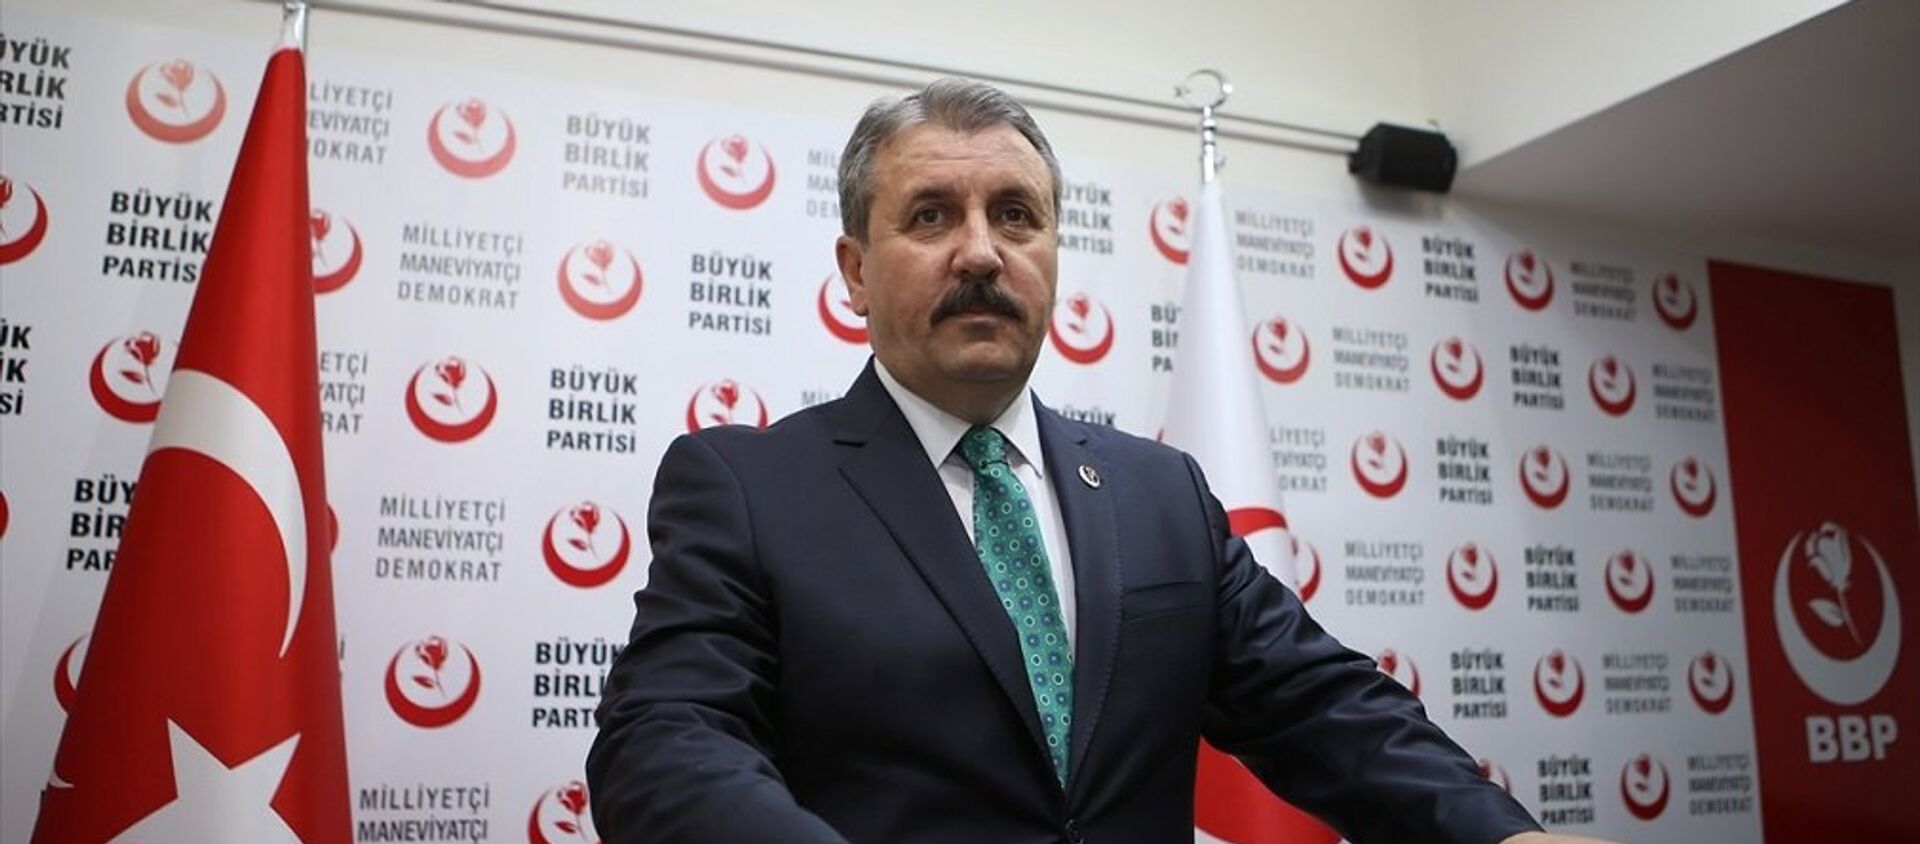 Büyük Birlik Partisi (BBP) Genel Başkanı Mustafa Destici - Sputnik Türkiye, 1920, 10.11.2019